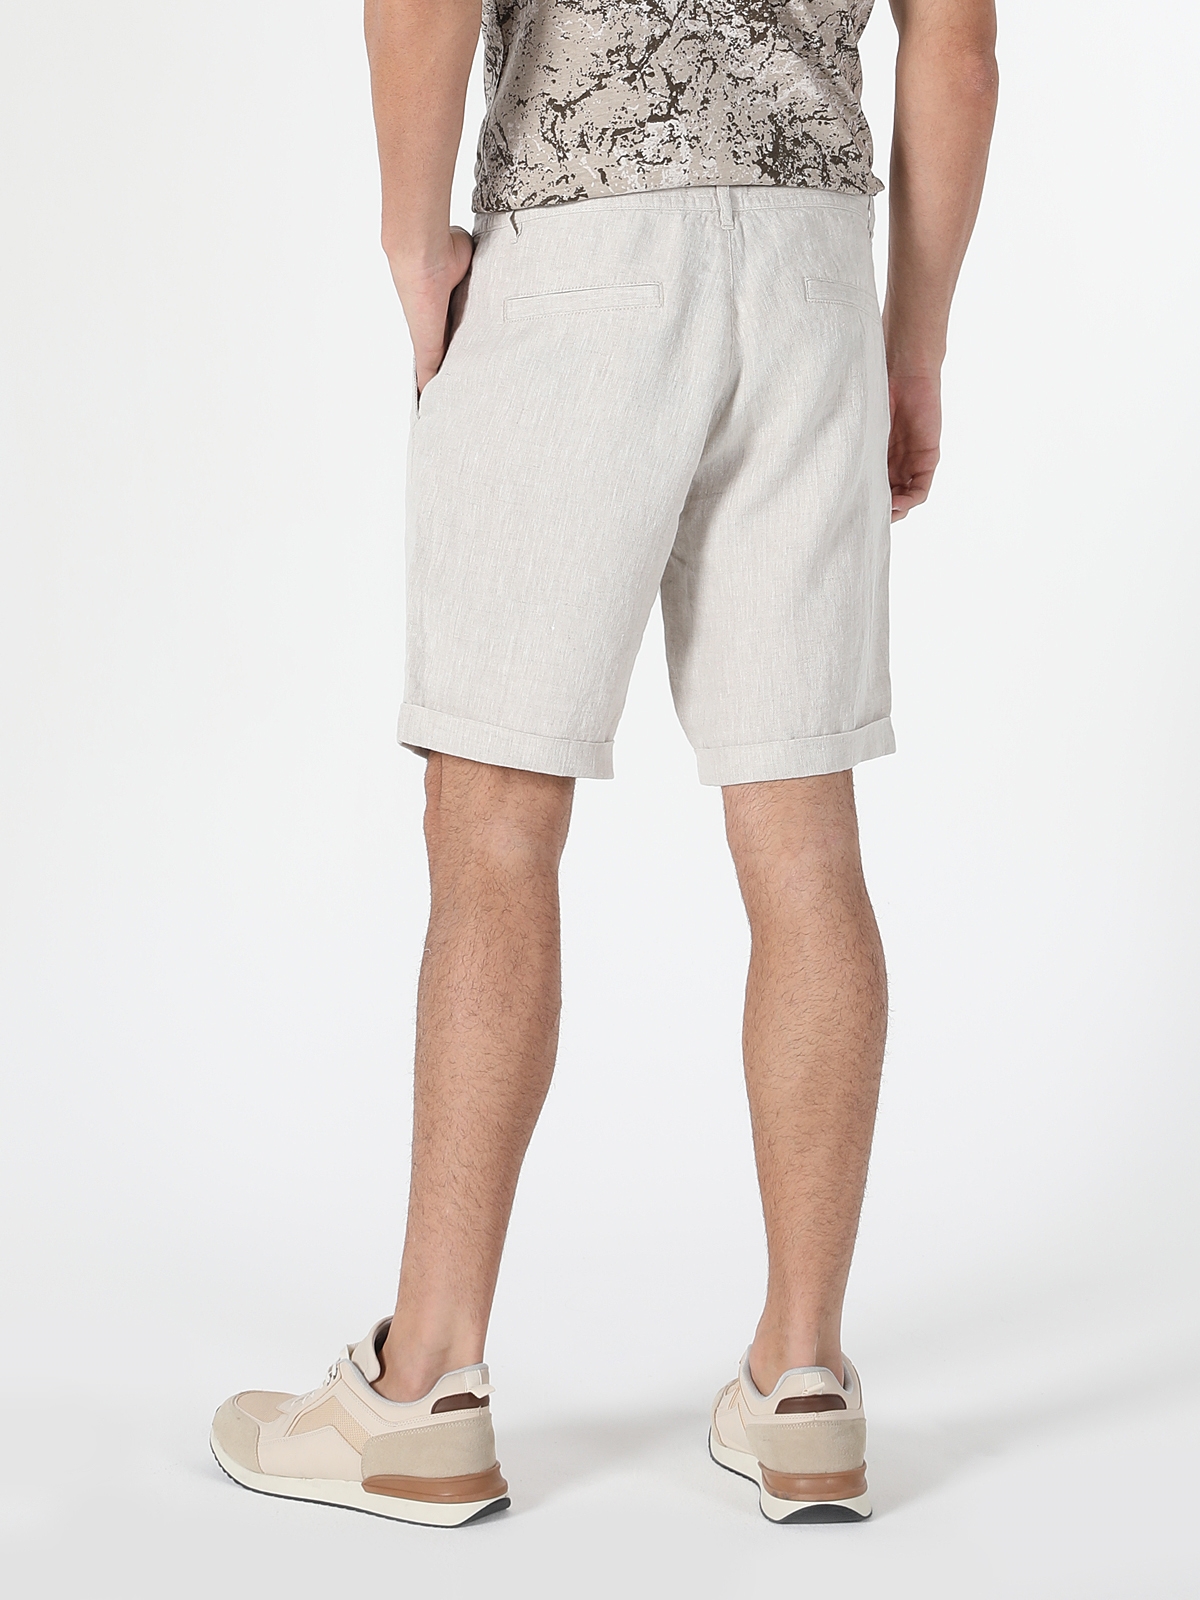 Afișați detalii pentru Short / Pantaloni Scurti De Barbati Alb Regular Fit 